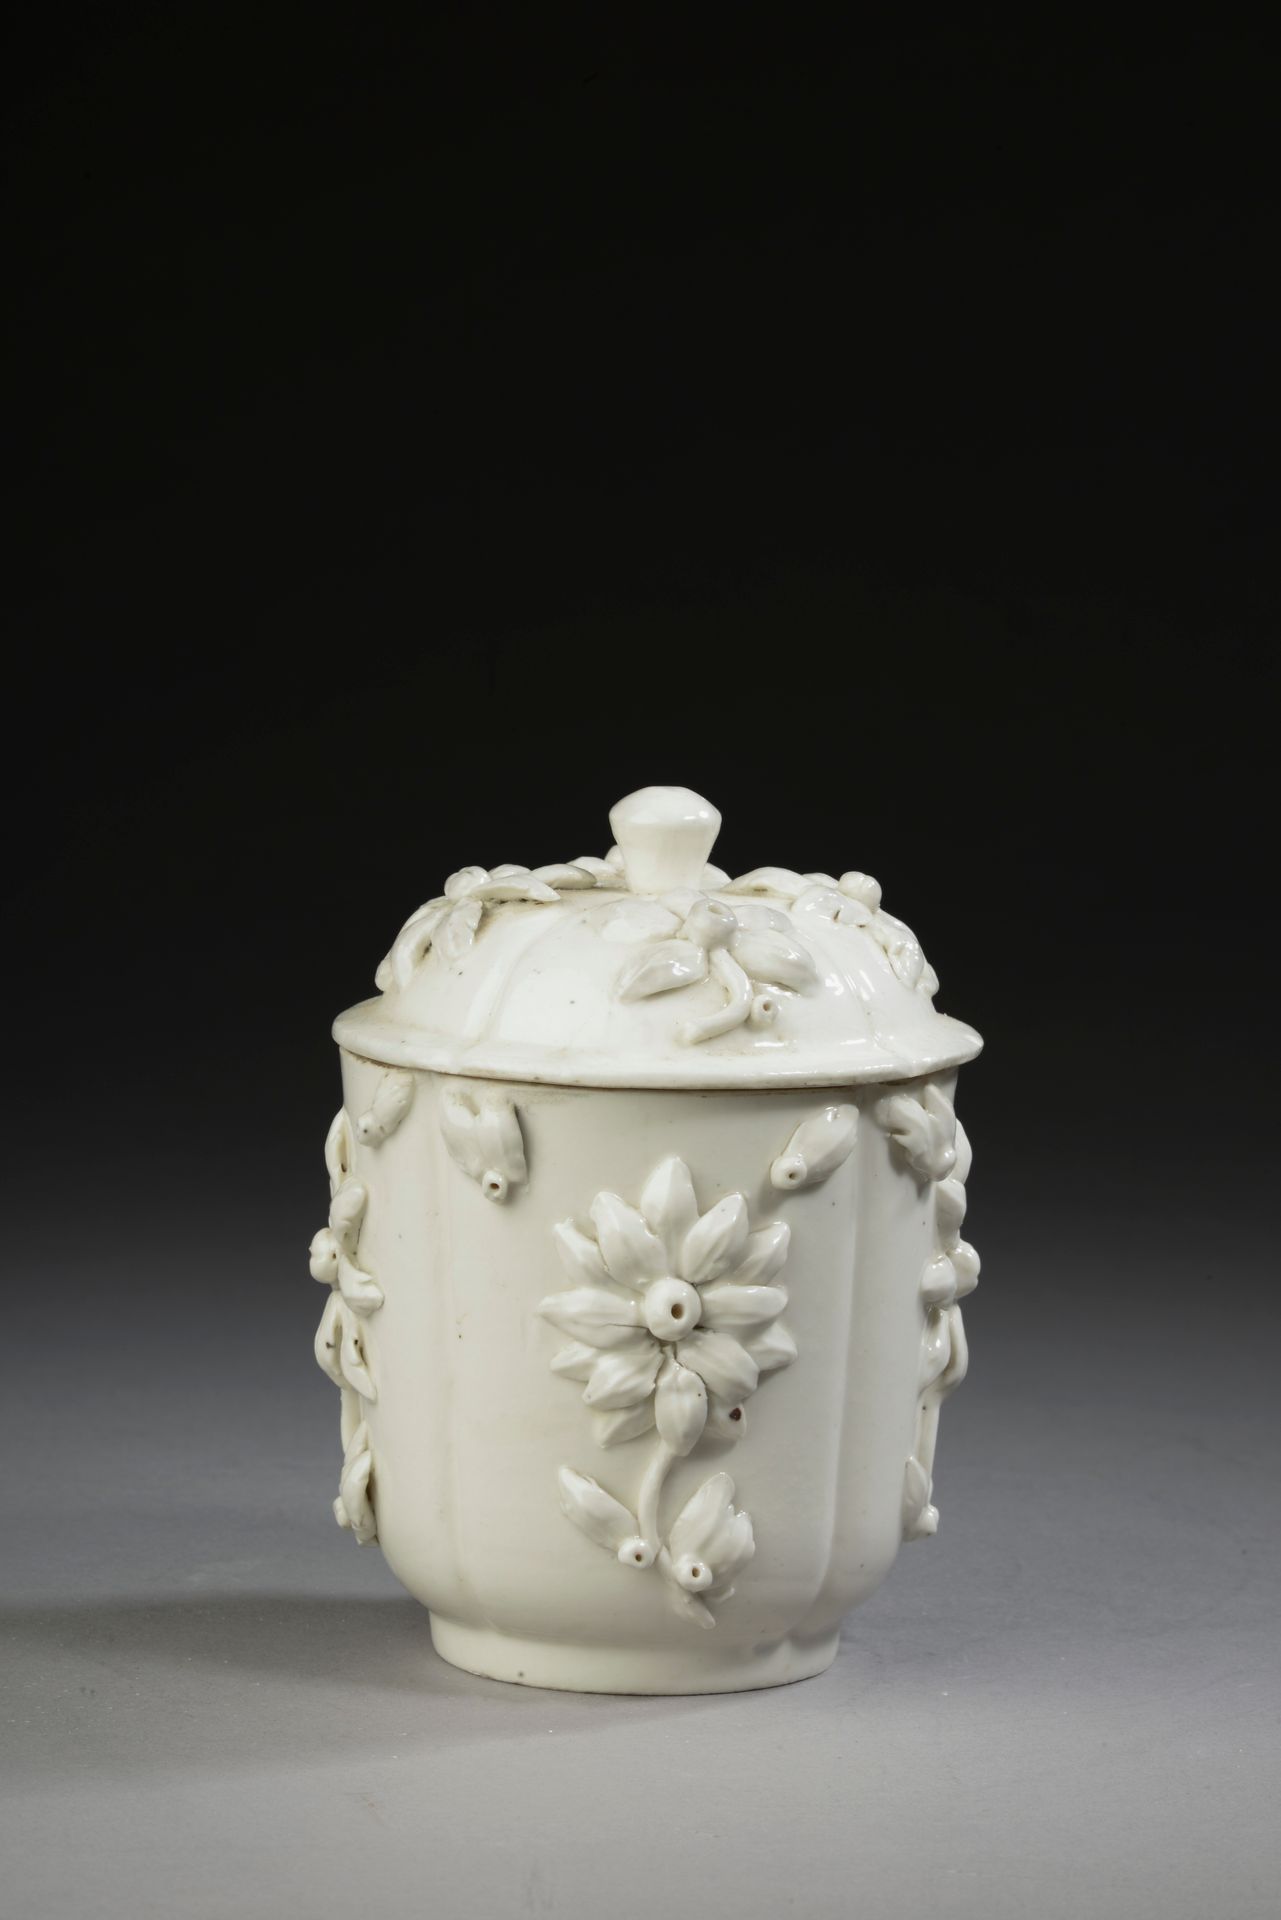 Null 模仿圣克洛德的桑松 
白釉瓷盖壶，上面有花纹图案，底座下有标记。 
19世纪。
高度：11.5厘米。高度：11.5厘米